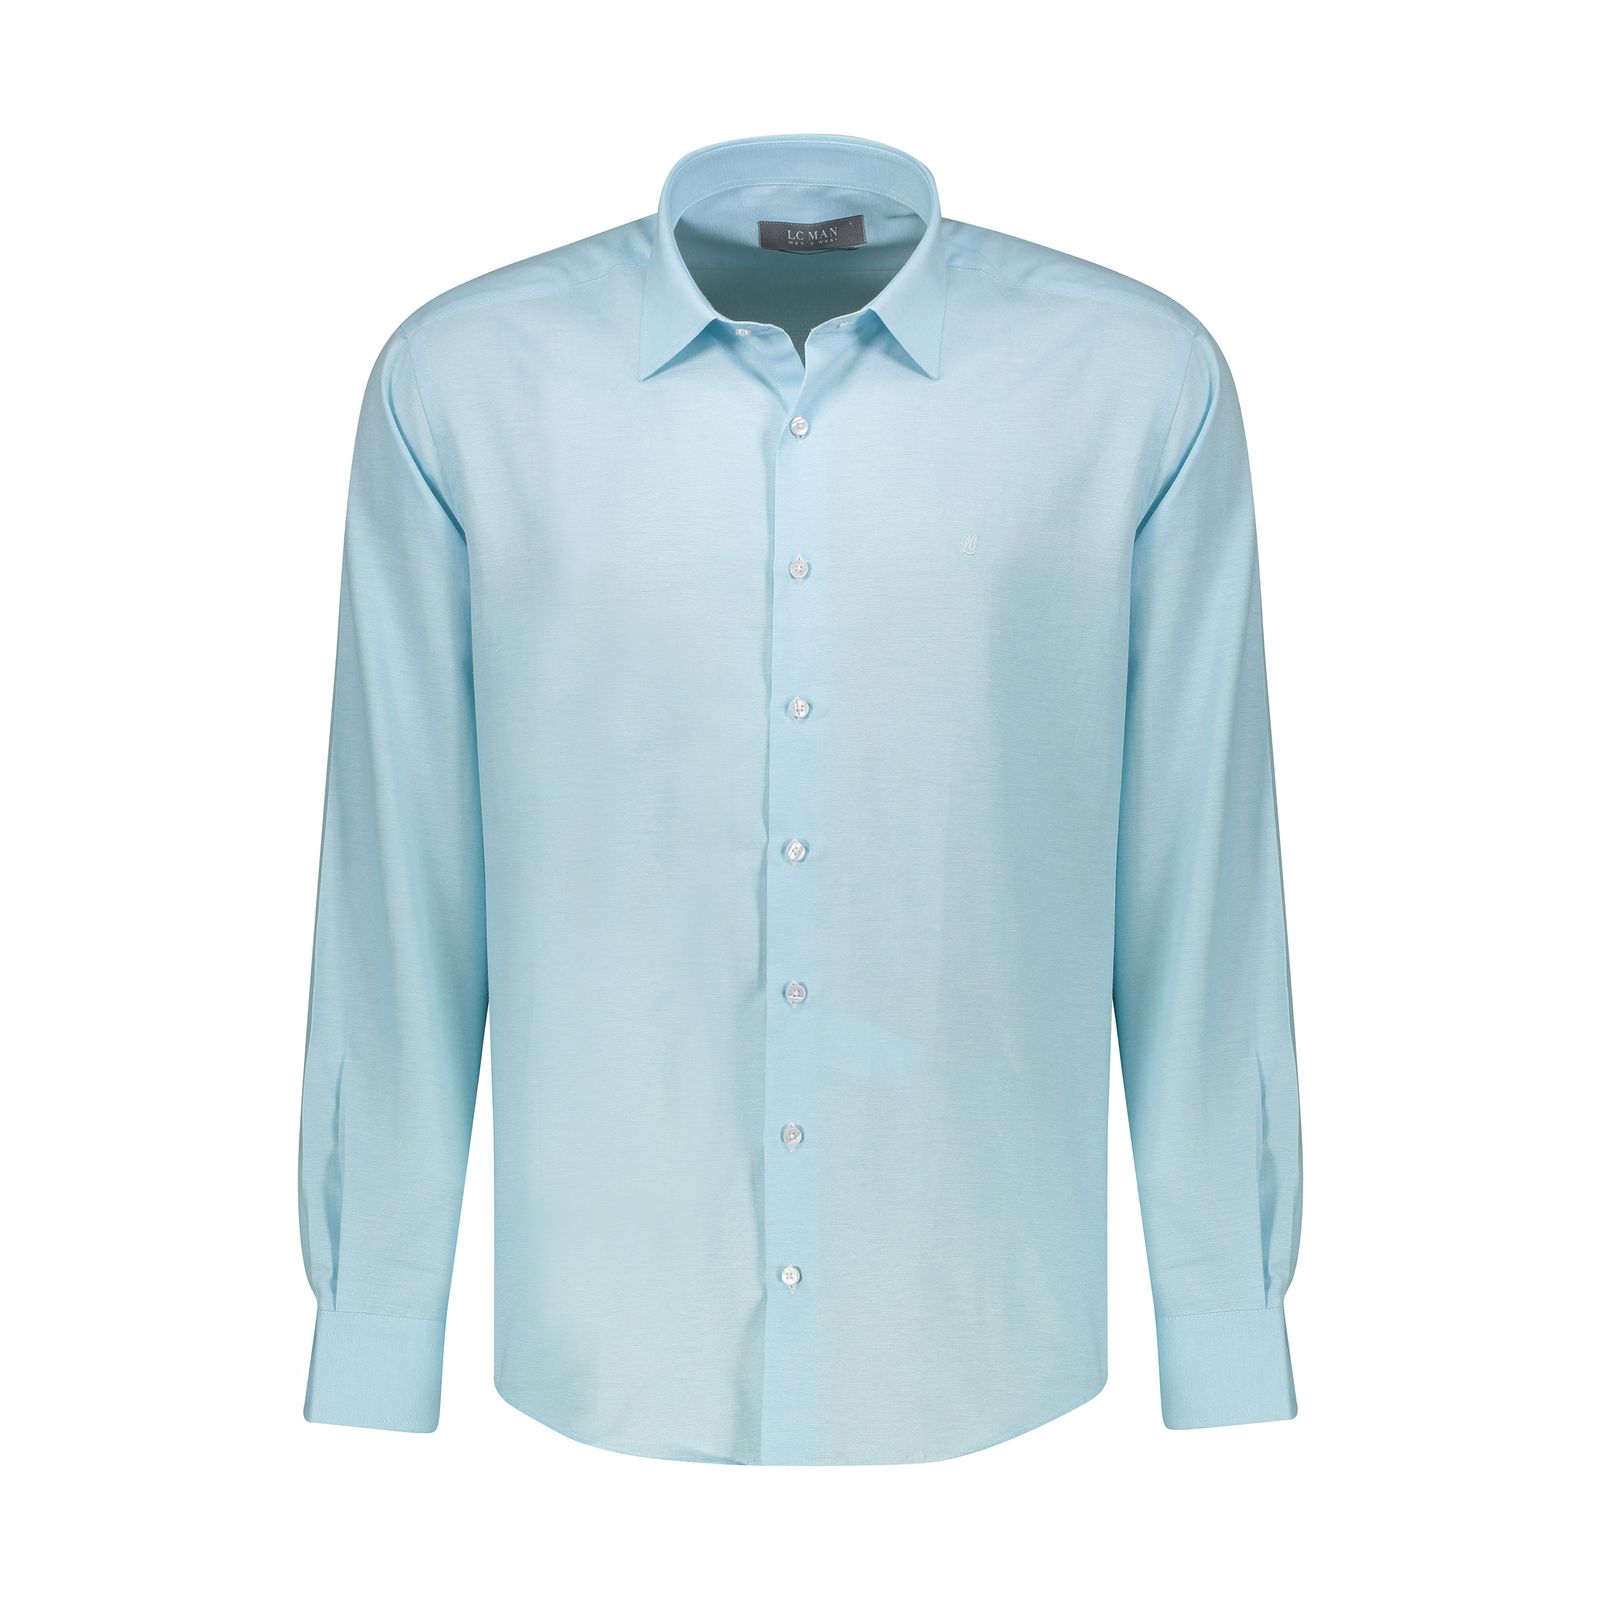 پیراهن آستین بلند مردانه ال سی من مدل 02181319-blue 145